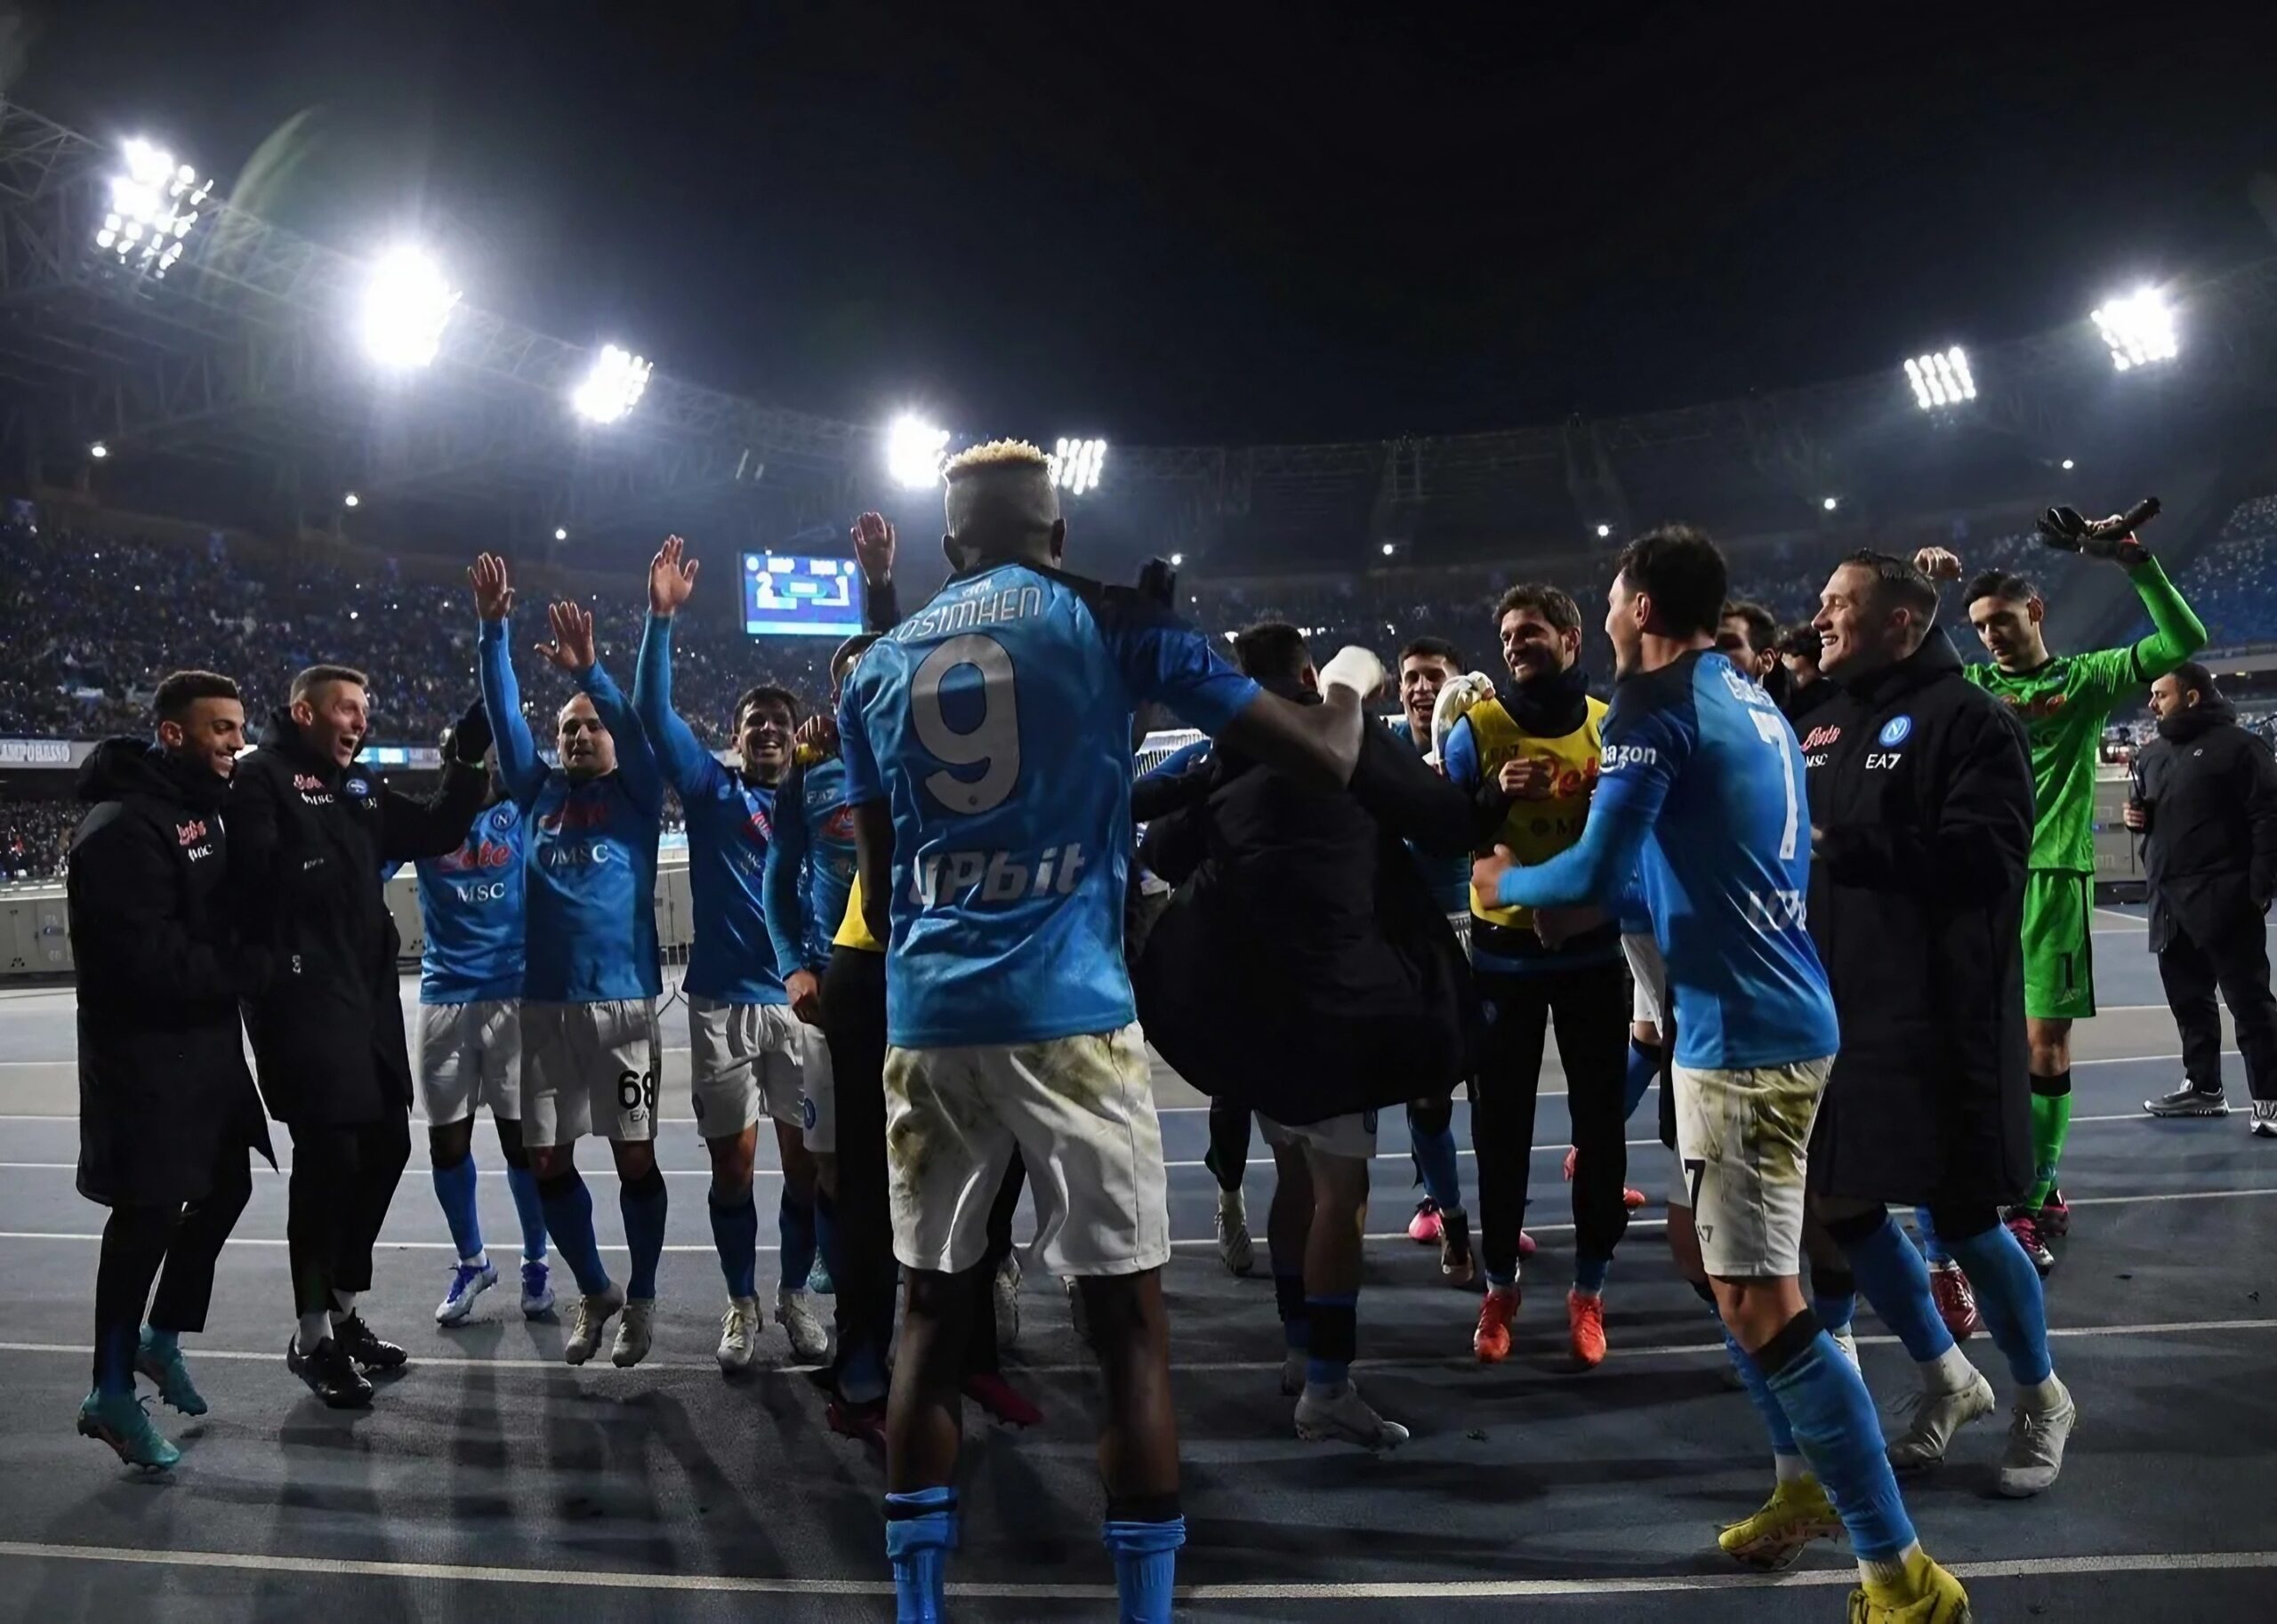 Calciatori SSC Napoli festeggiano dopo una vittoria